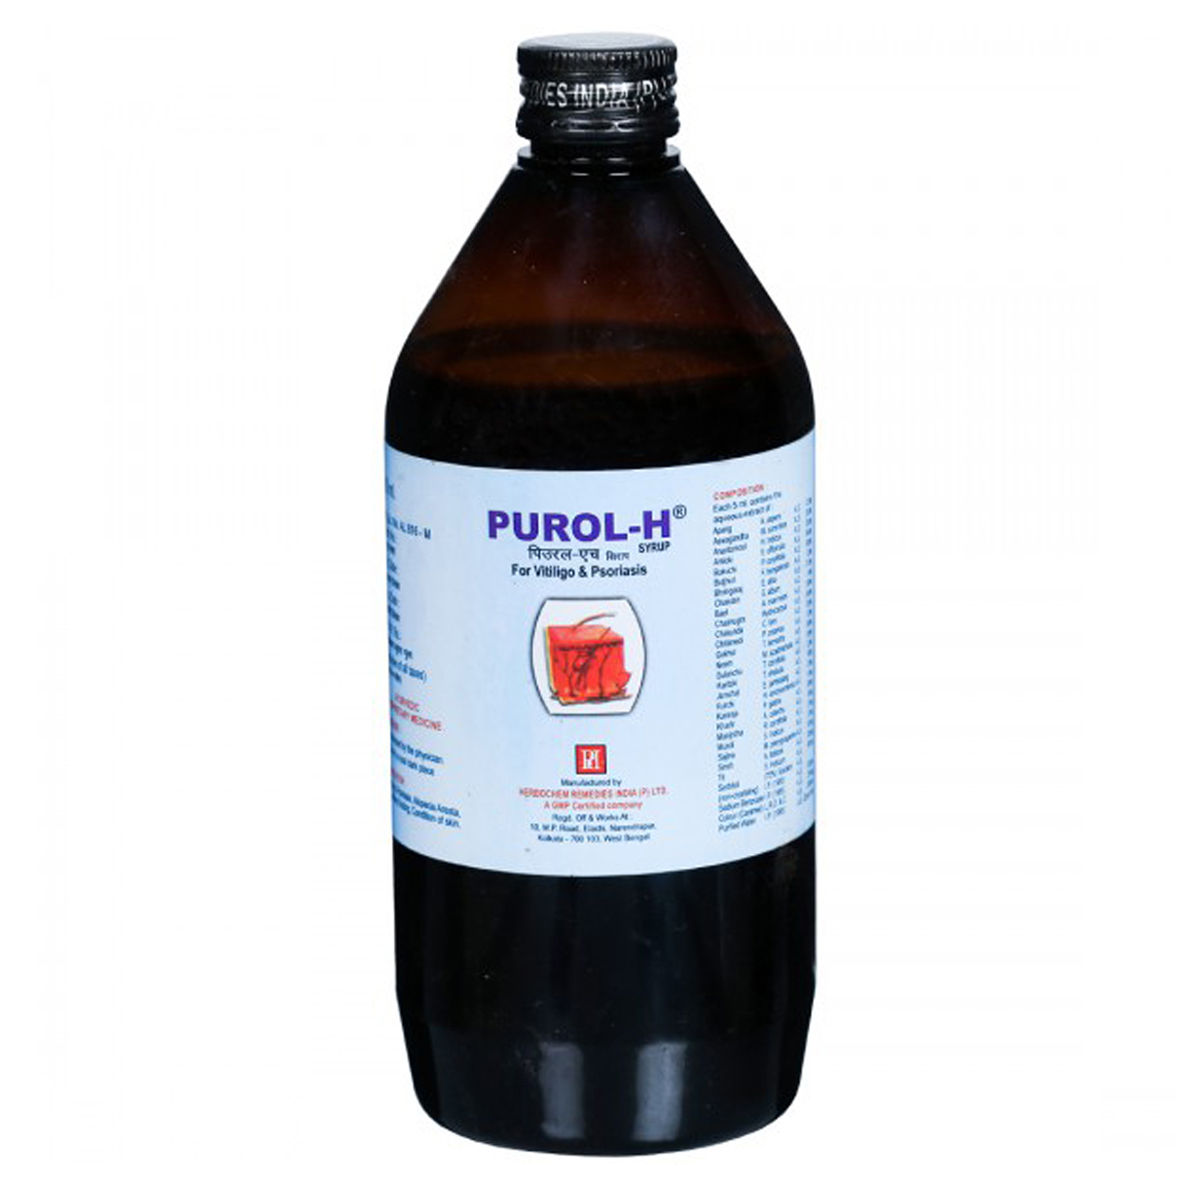 Buy Purol-H Syrup, 450 ml Online